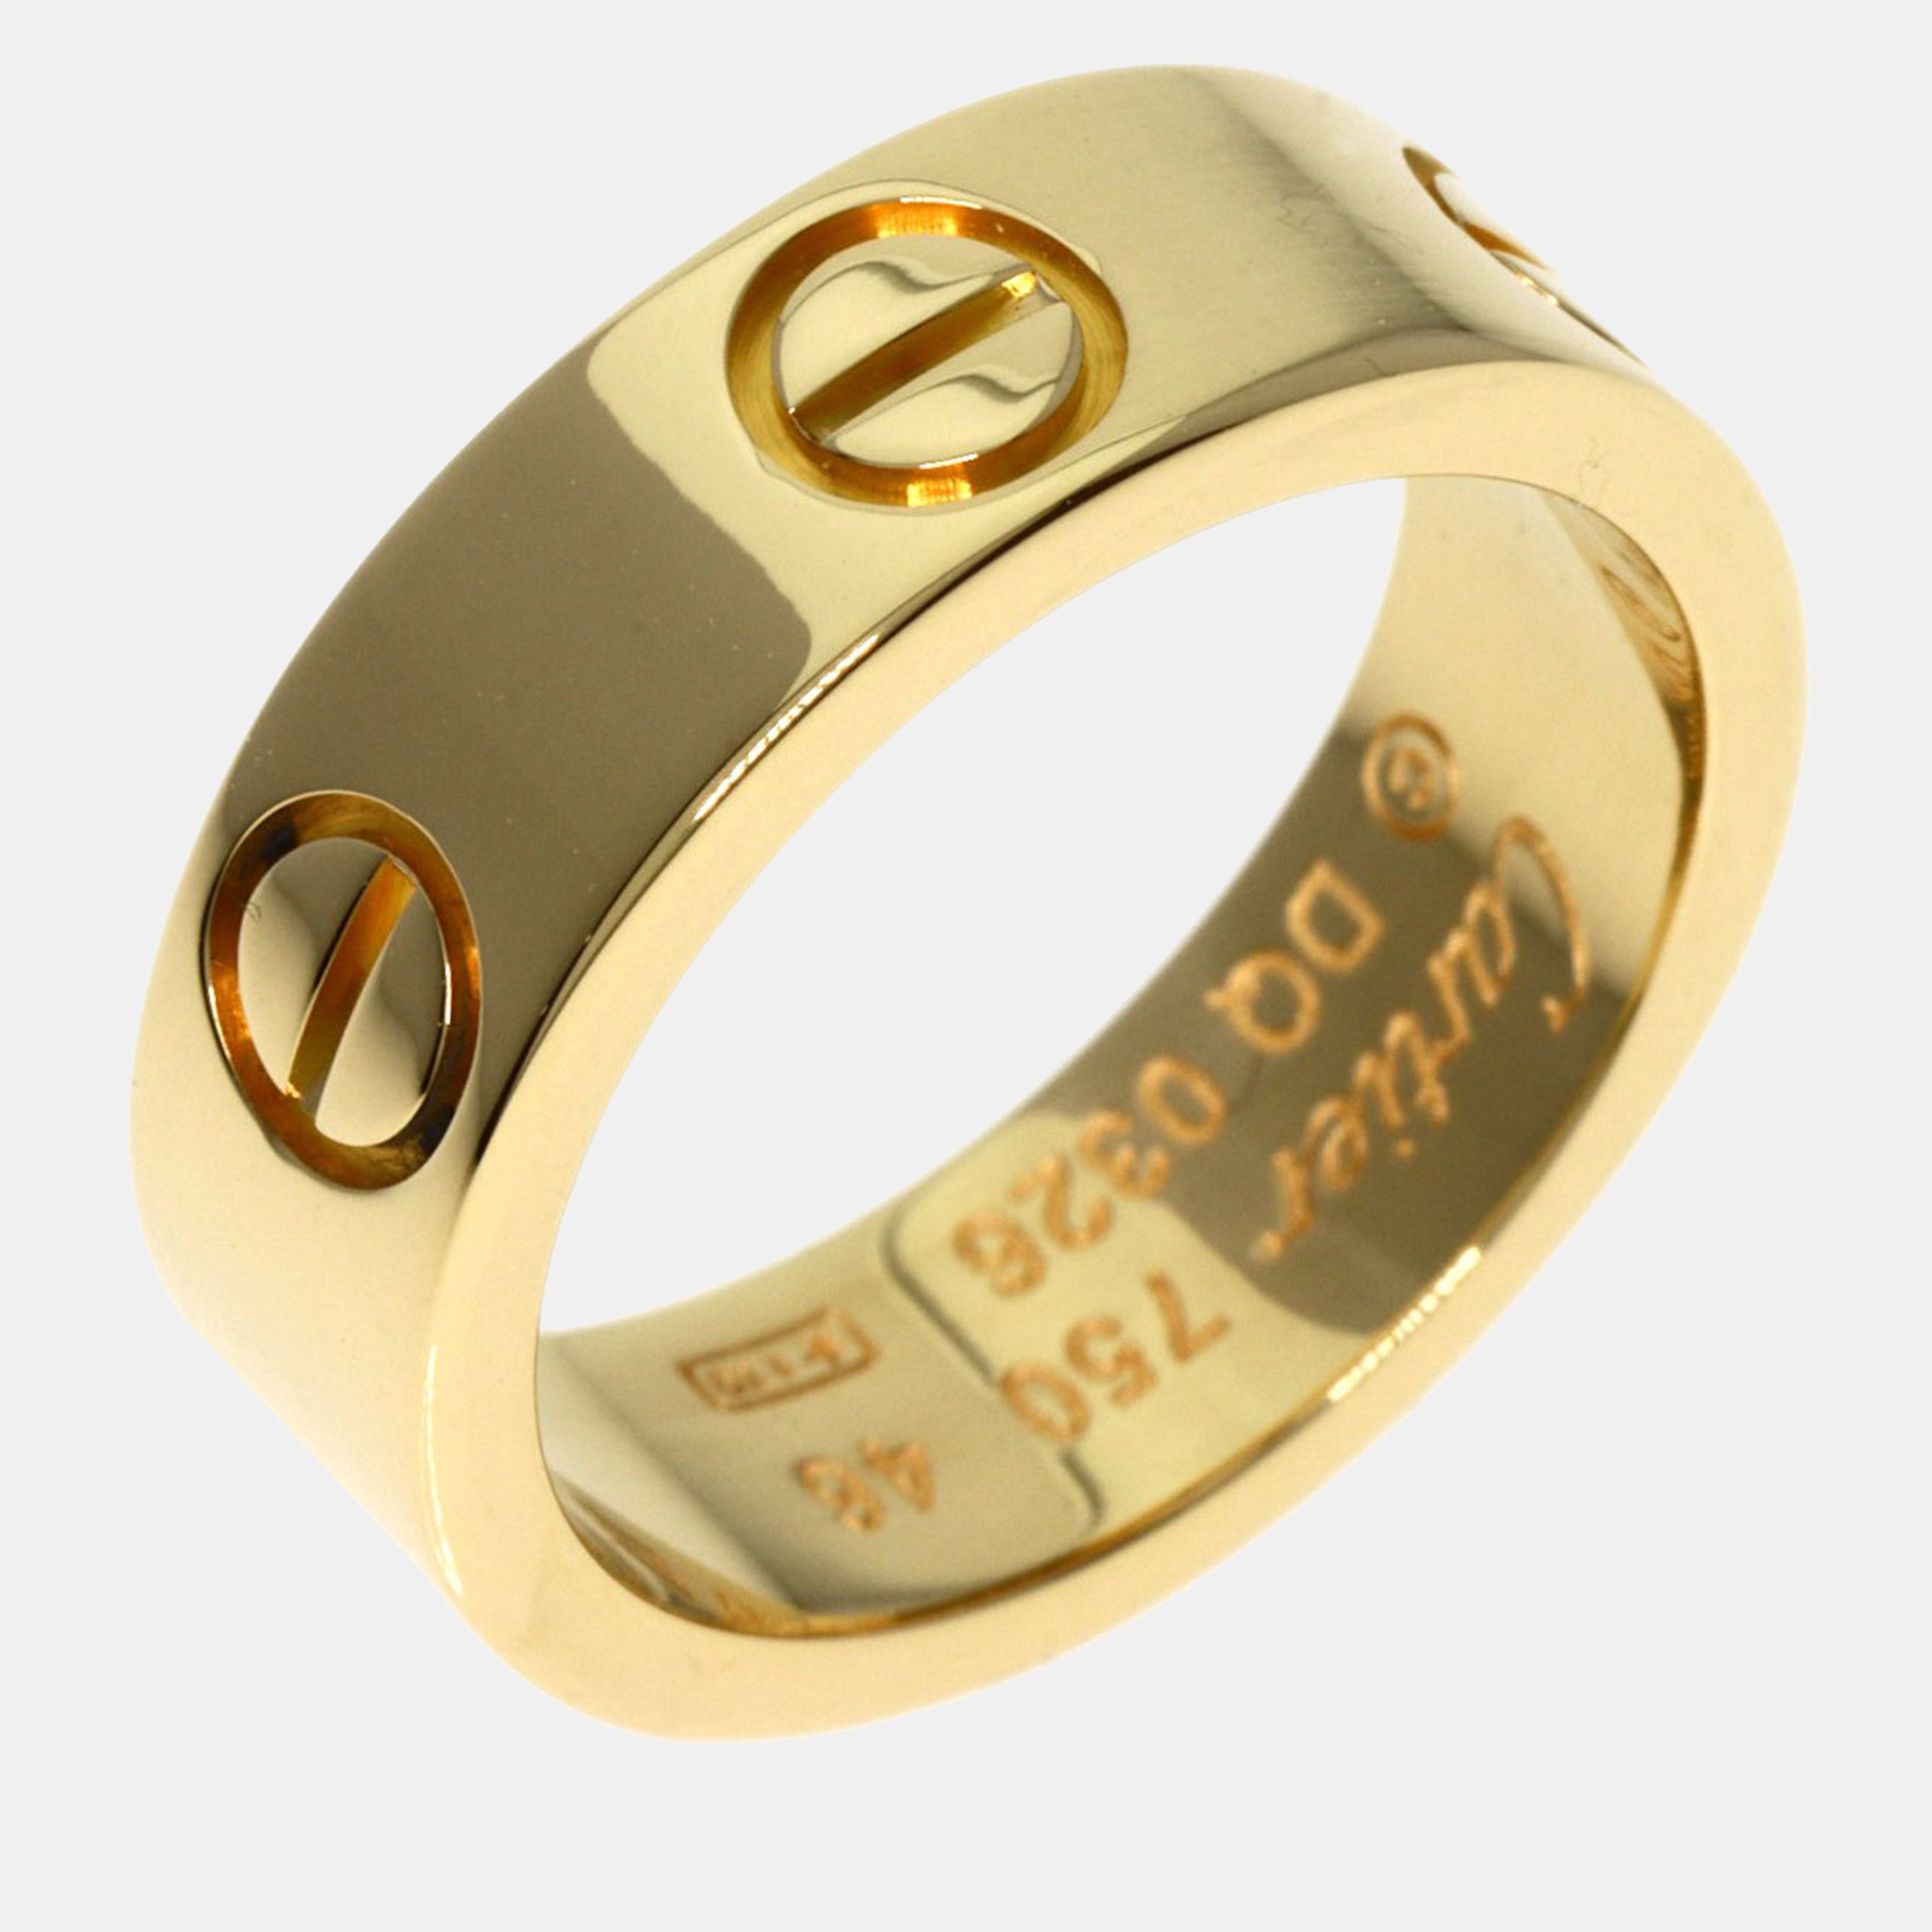 Cartier 18K Yellow Gold Love Band Ring EU 46